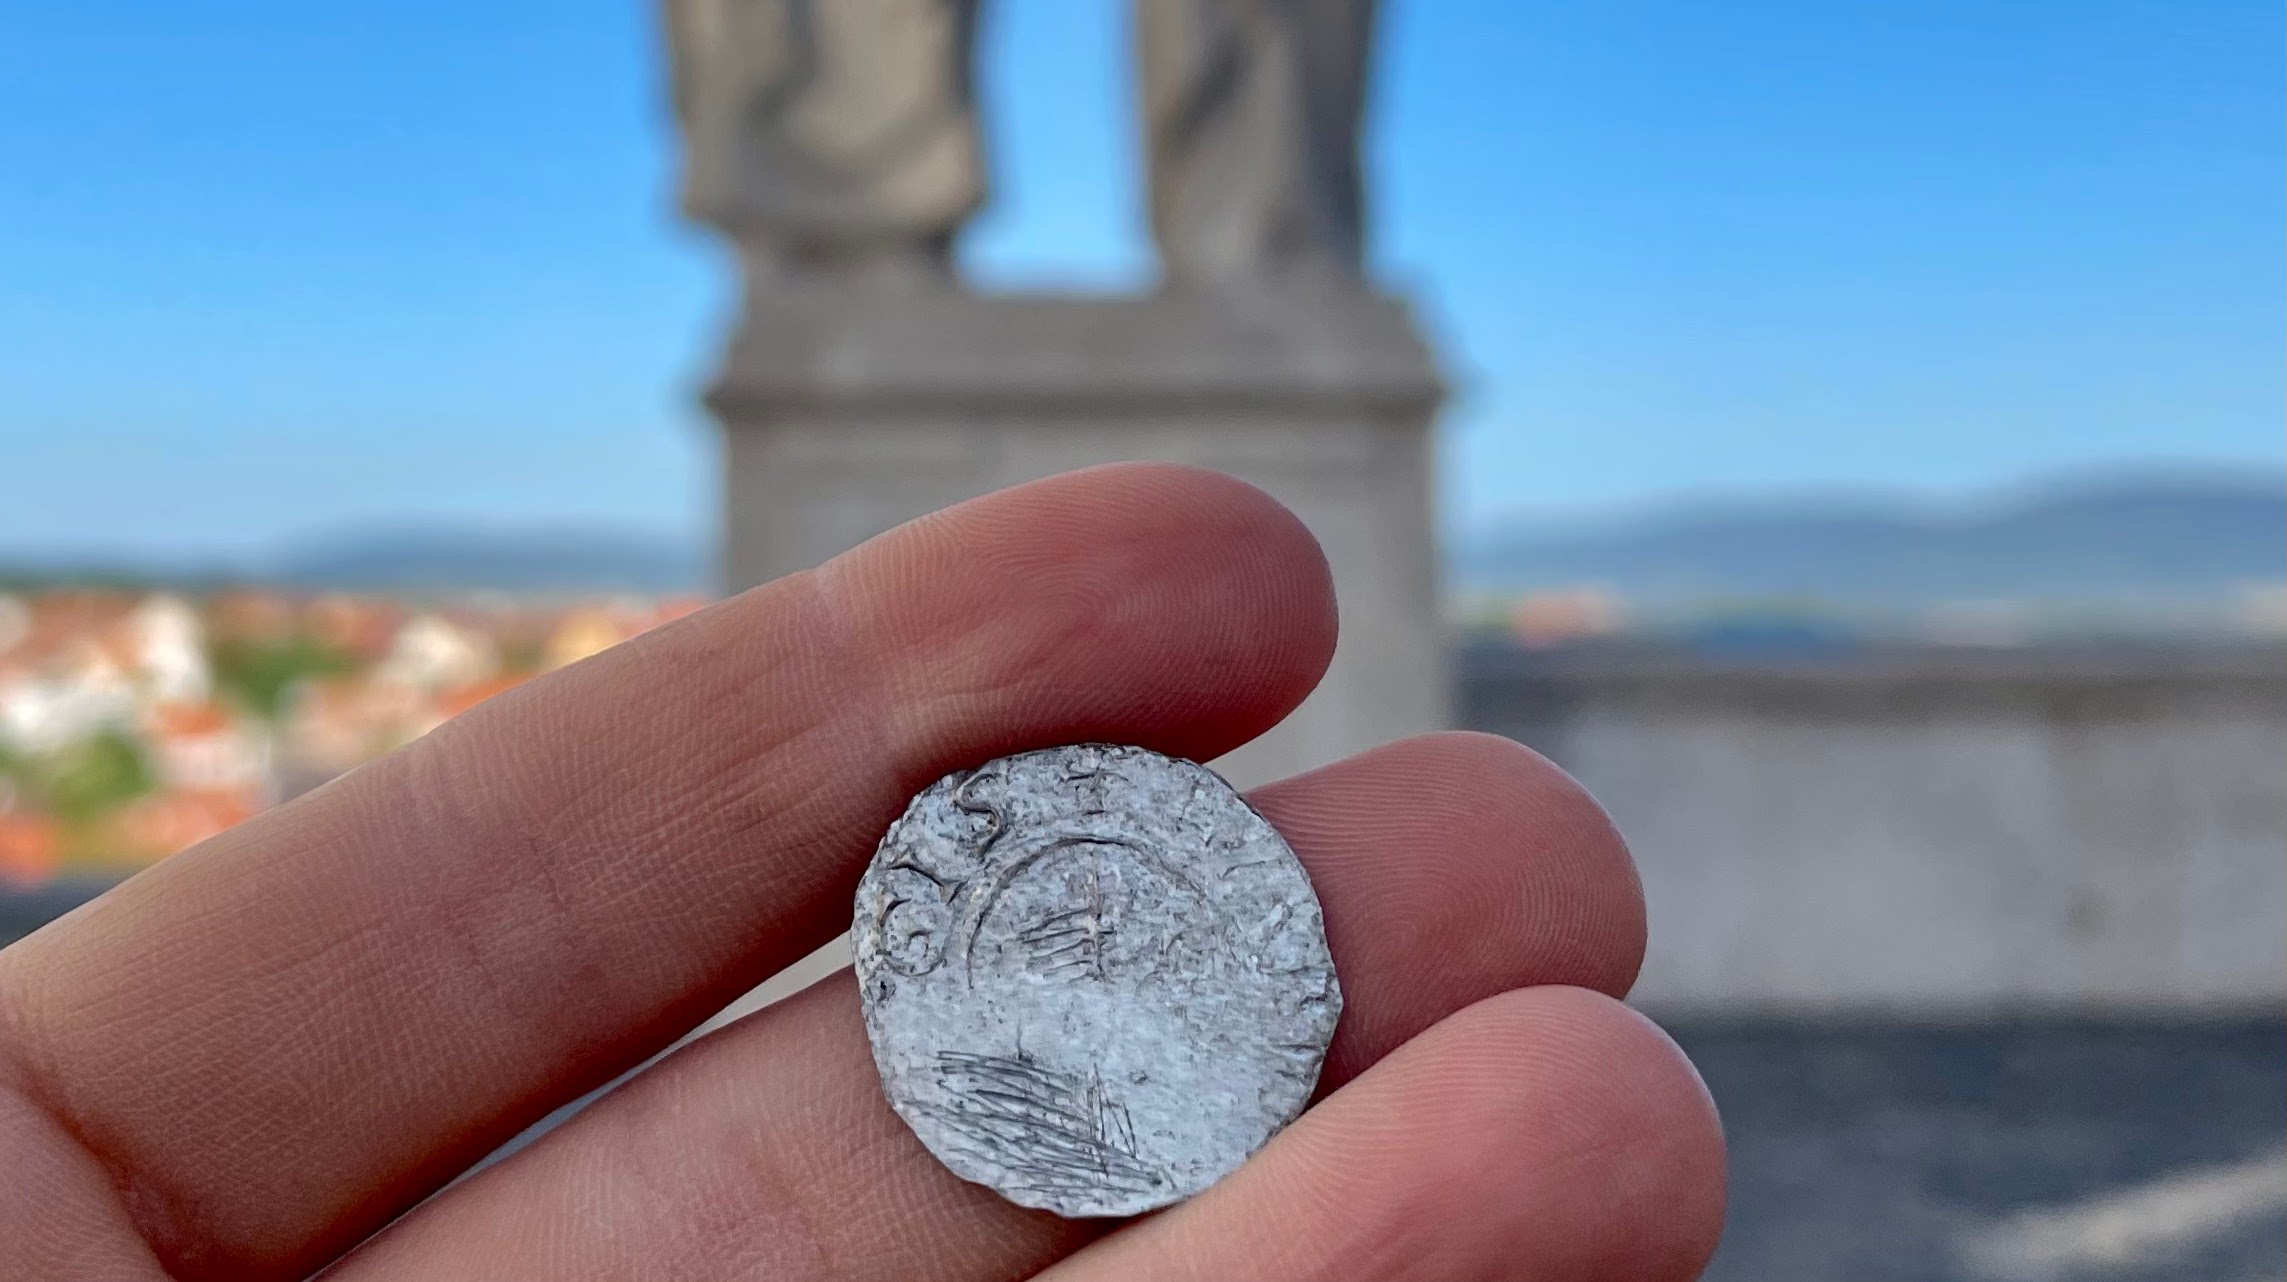 Szent István király ezüstdénárját találták meg Veszprémben